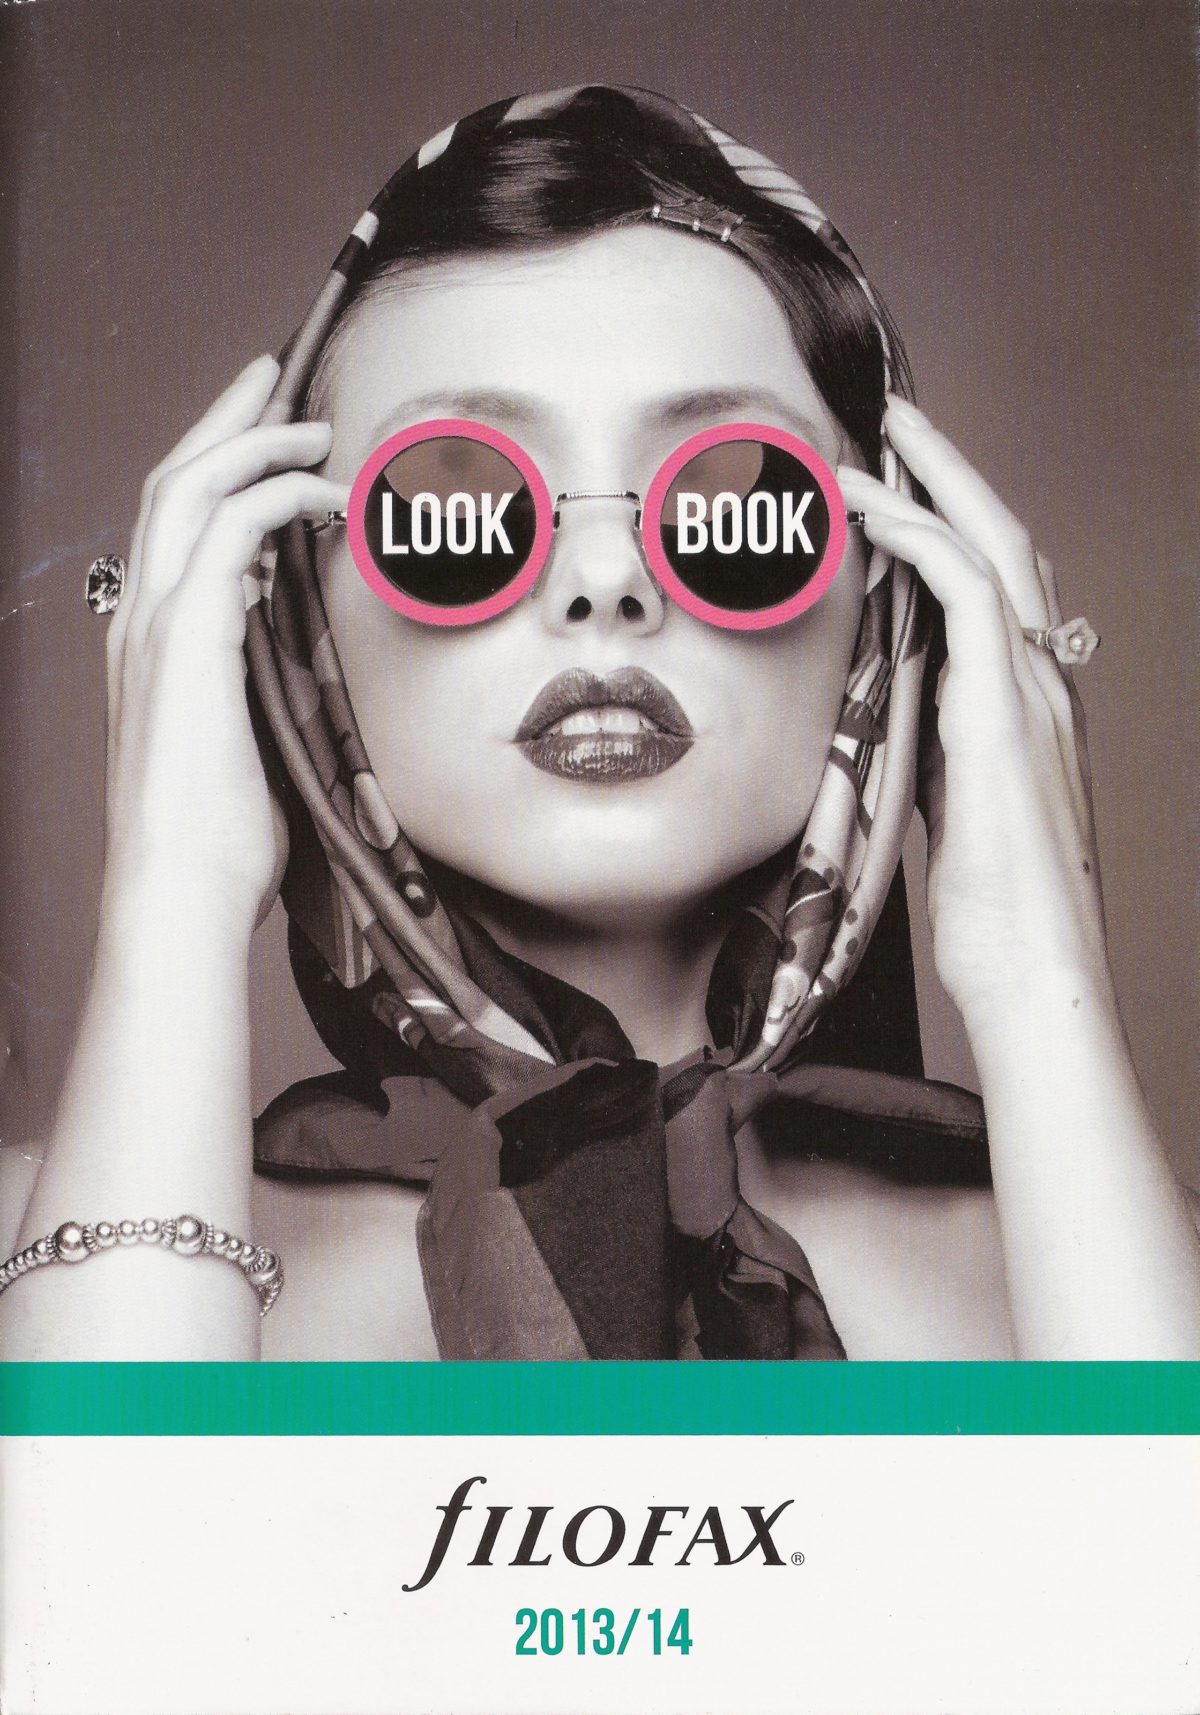 Filofax UK Look Book 2013/14